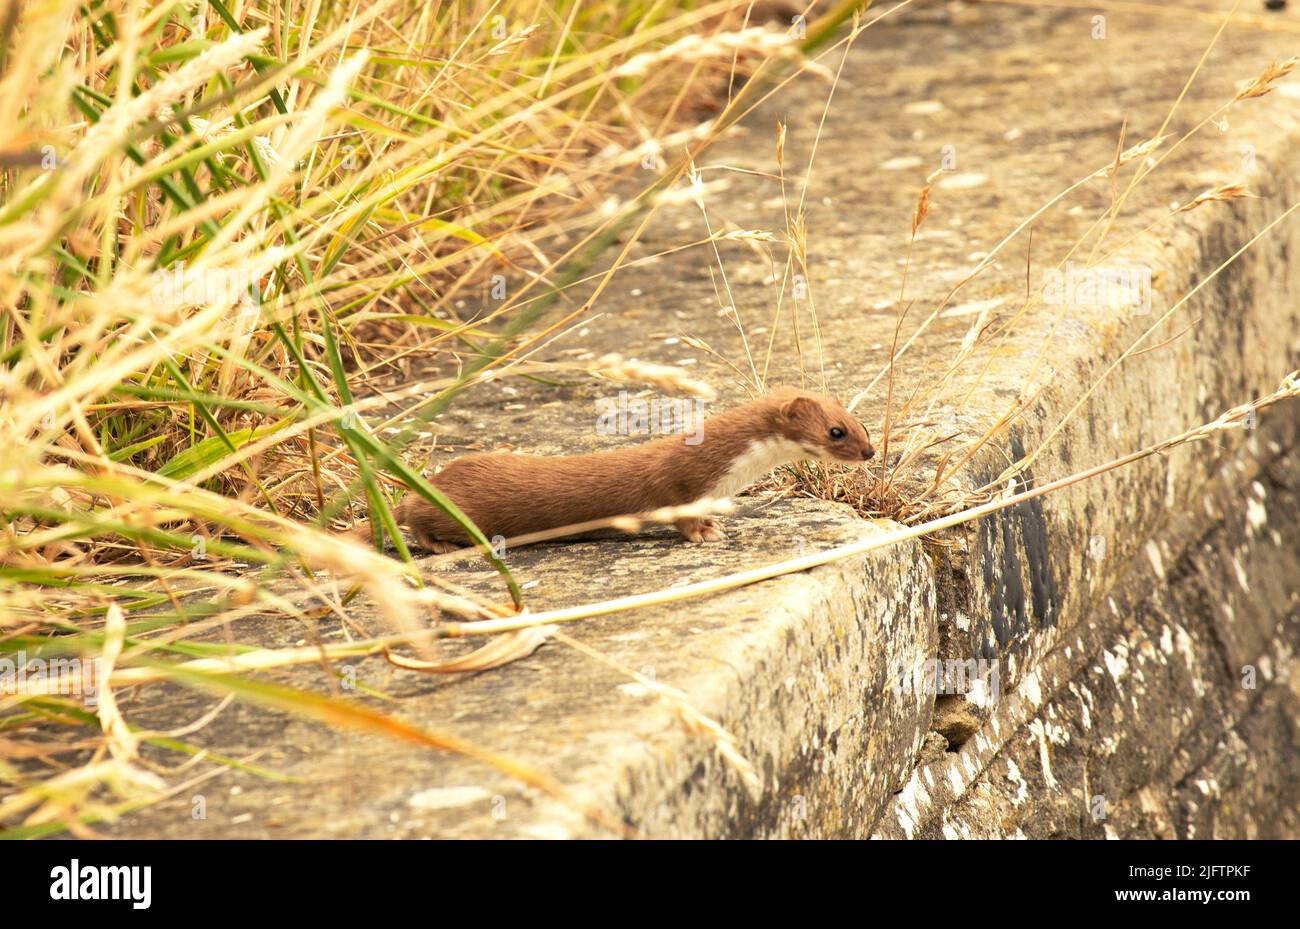 Der Weasel sieht aus wie eine kleine Eselin und ist in Großbritannien weit verbreitet. Sie sind Tag und Nacht aktiv und fressende Raubtiere kleiner Säugetiere. Stockfoto